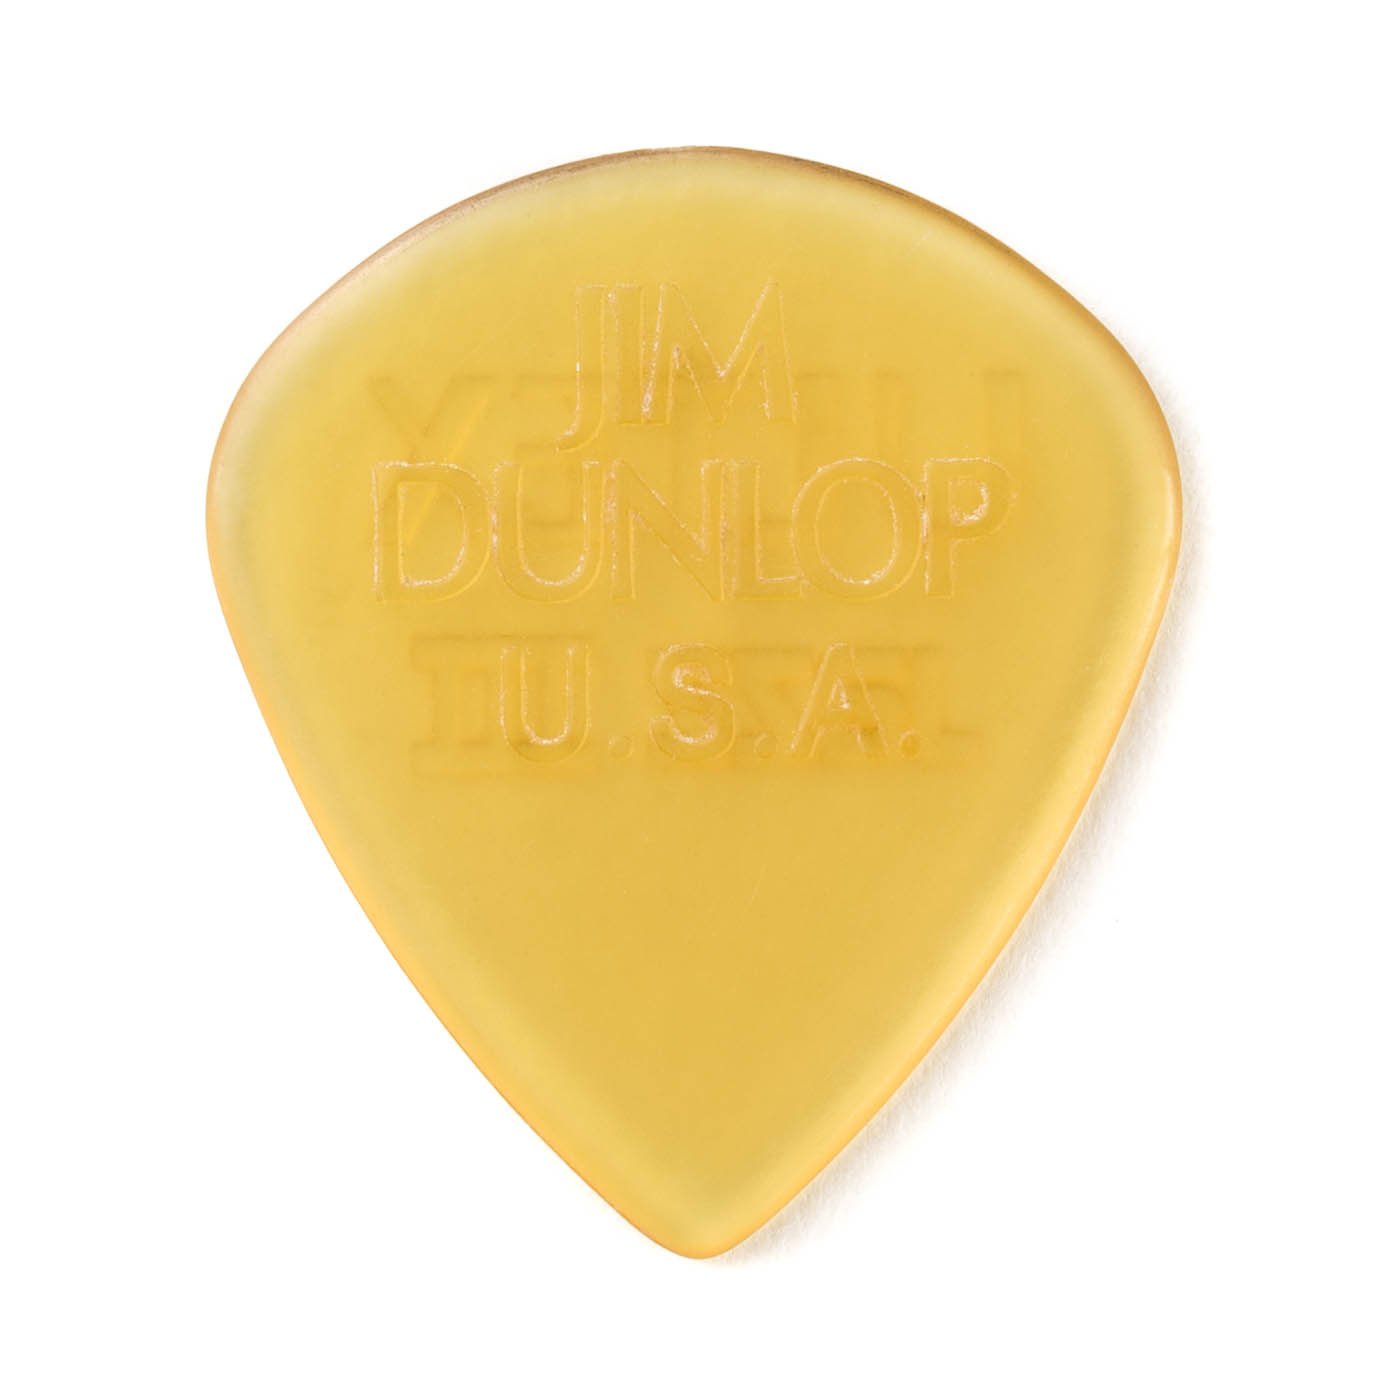 Dunlop Ultex Jazz III Guitar Pick